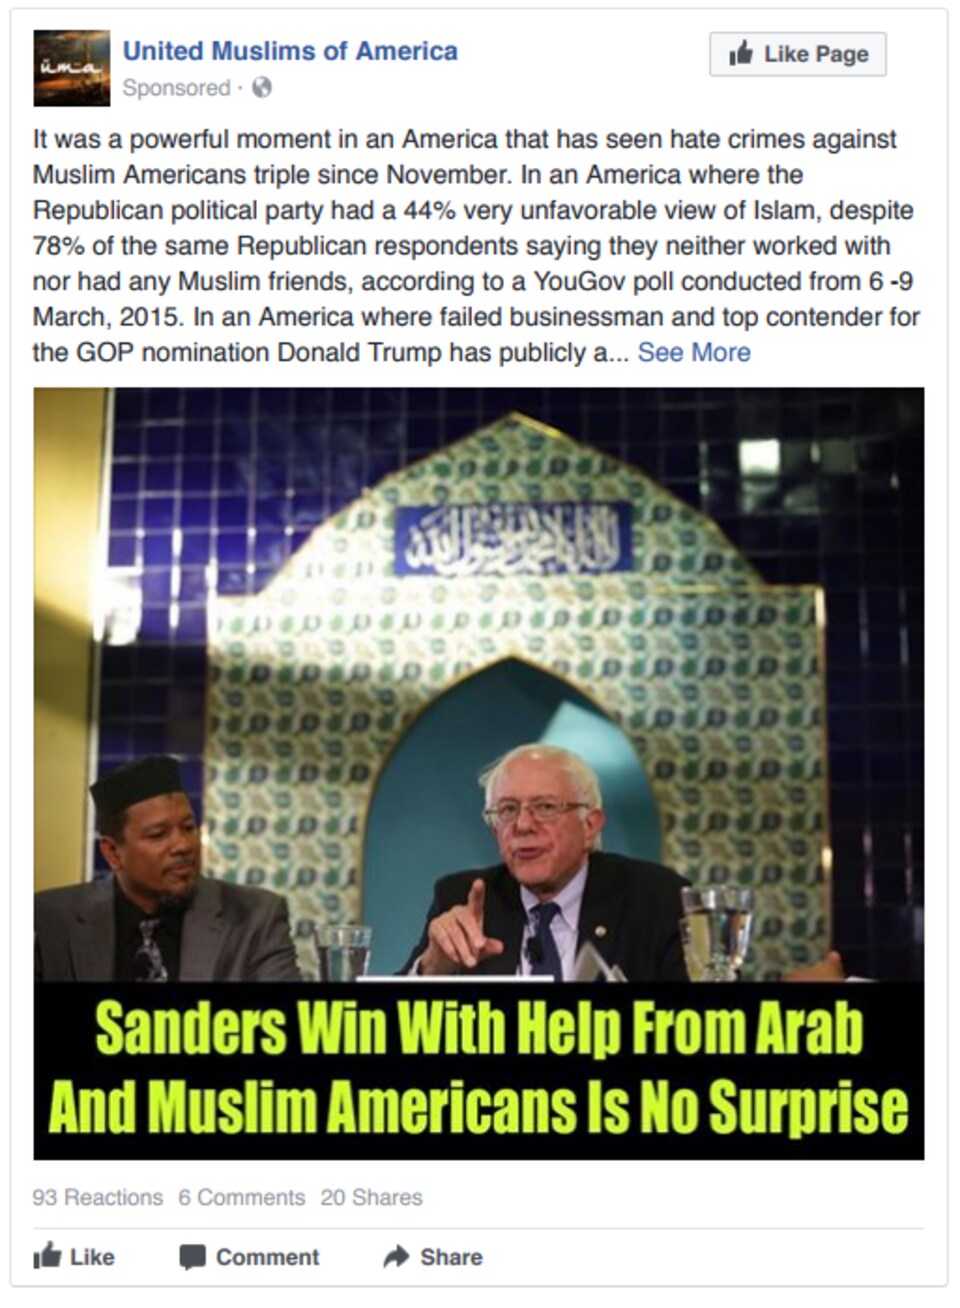 La publication explique que « Sanders gagnera sans surprise, avec l'aide des musulmans et des Arabes aux États-Unis ».